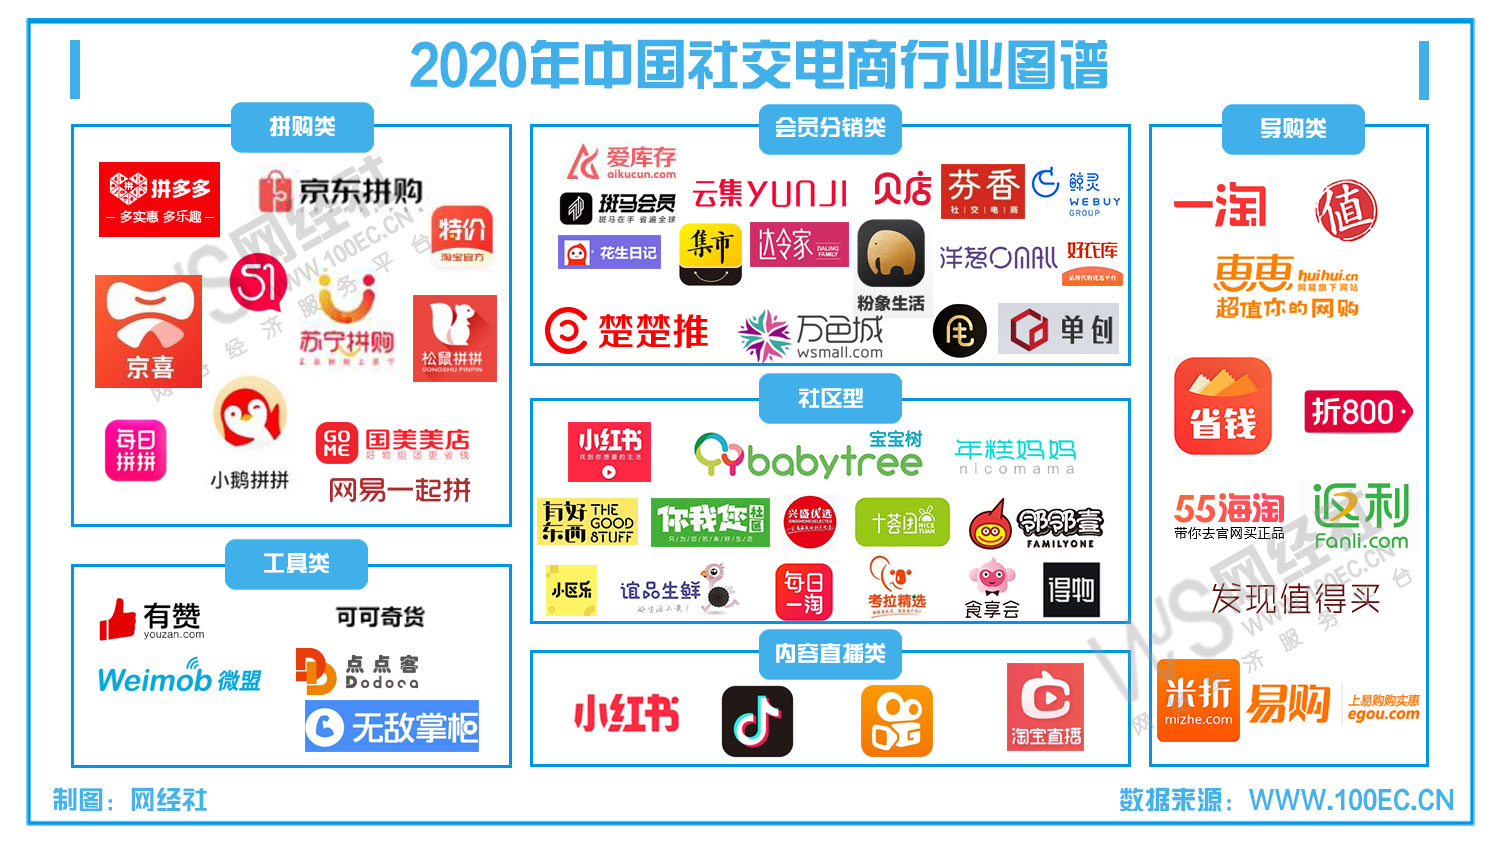 2020年中国社交电商行业图谱(4).jpg